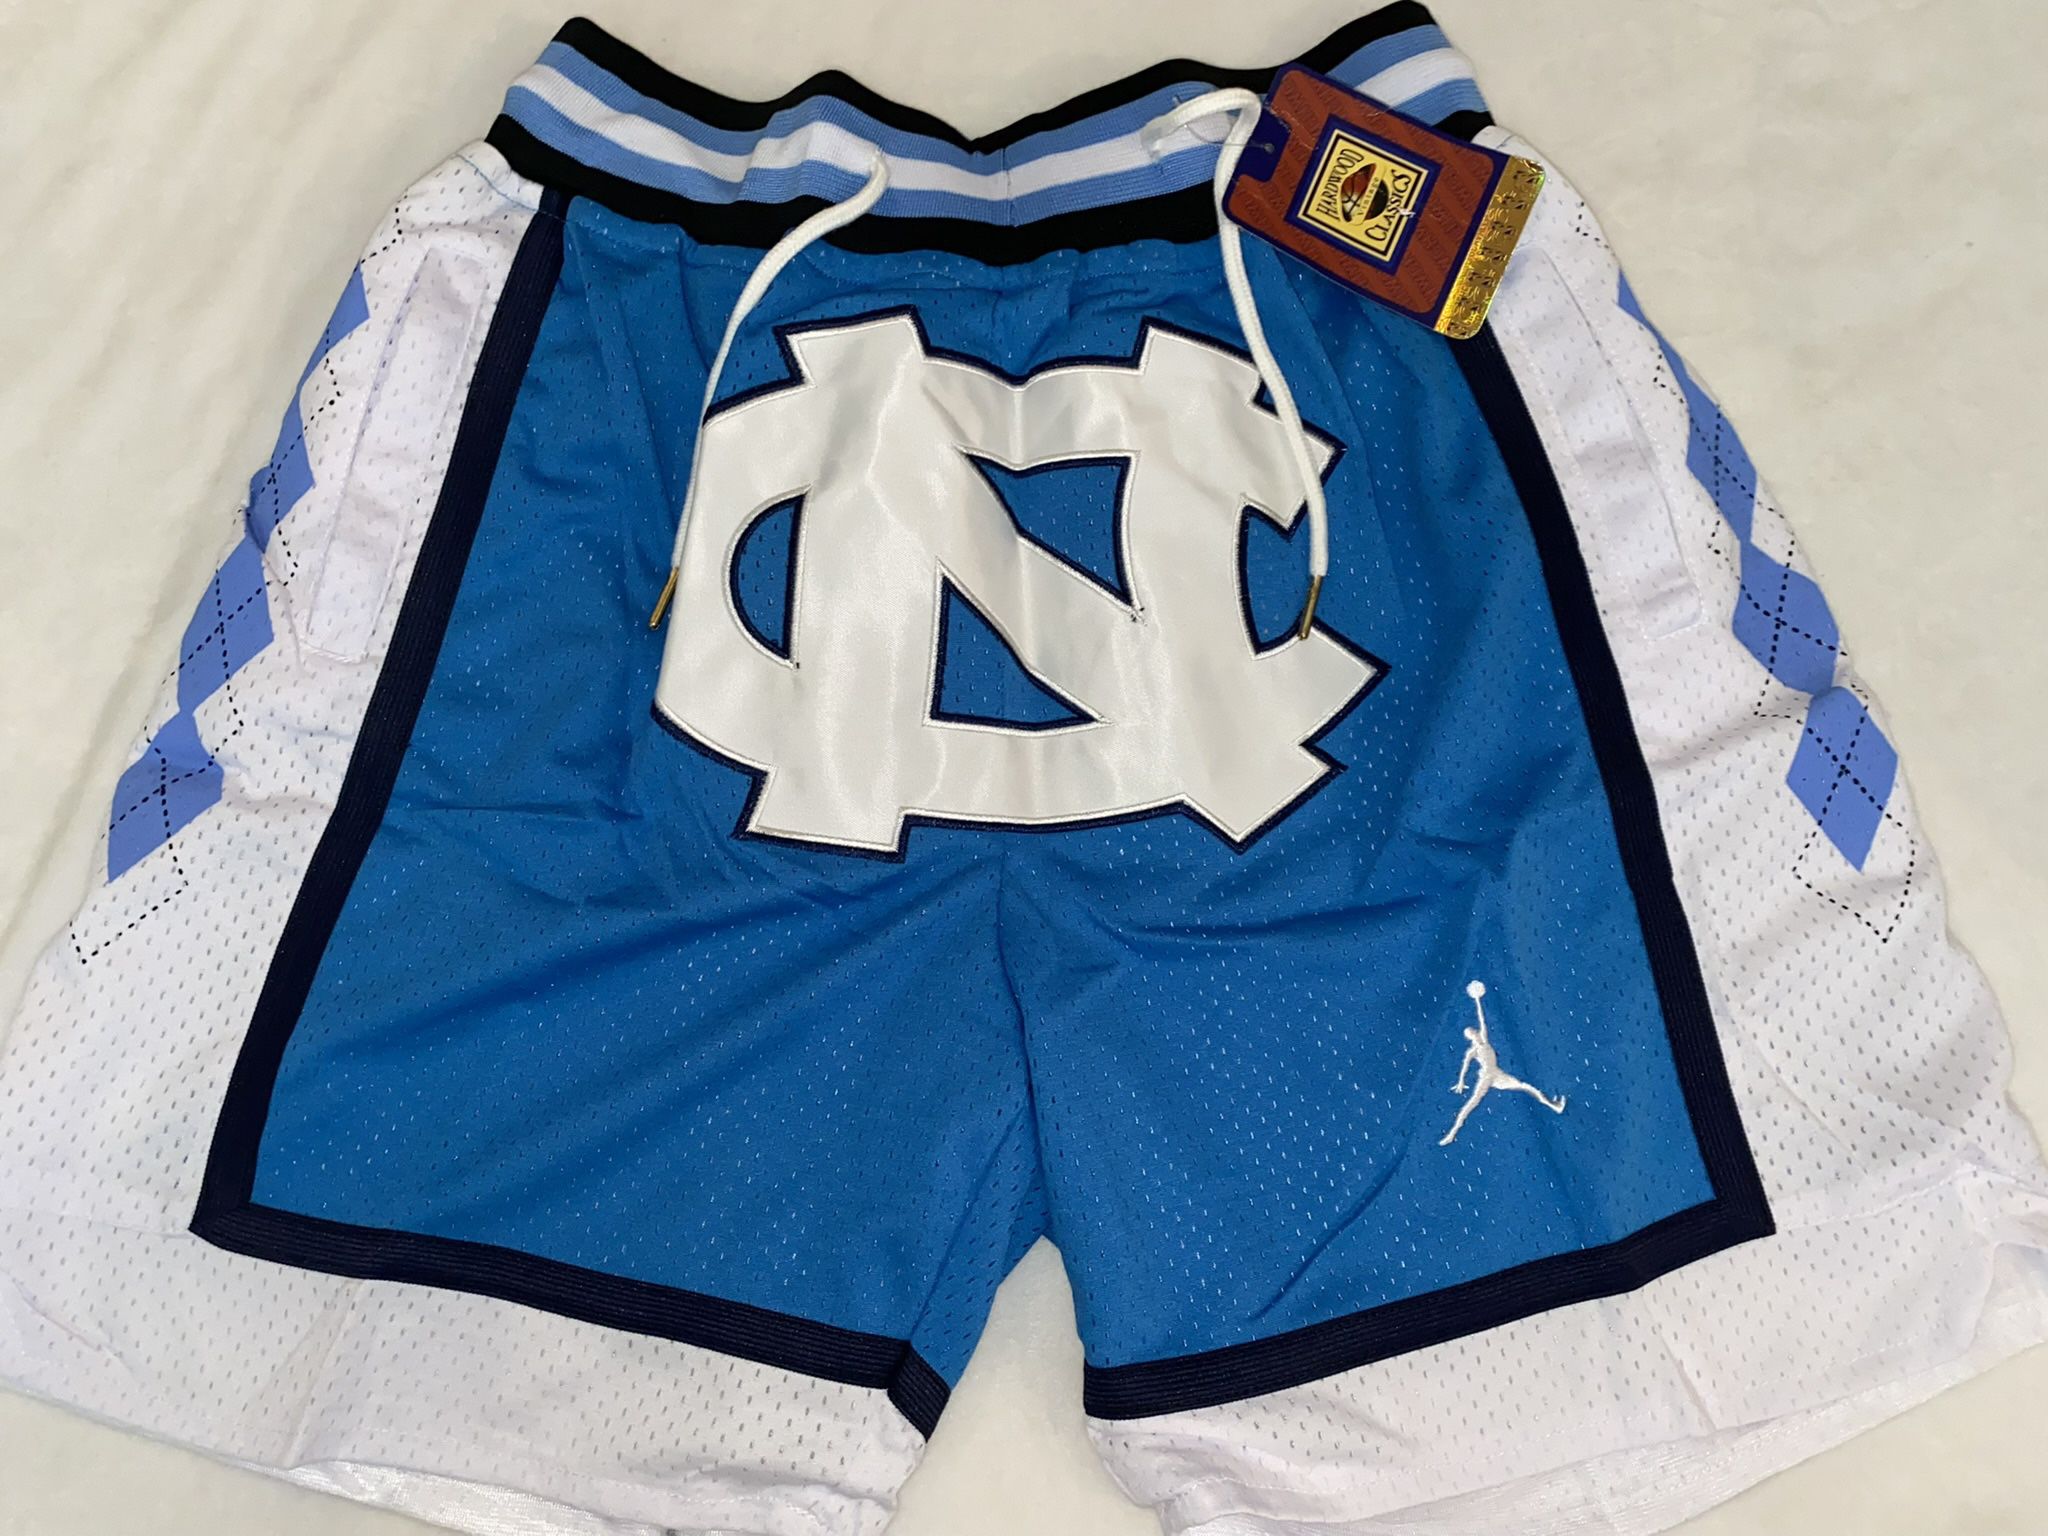 NC Shorts 